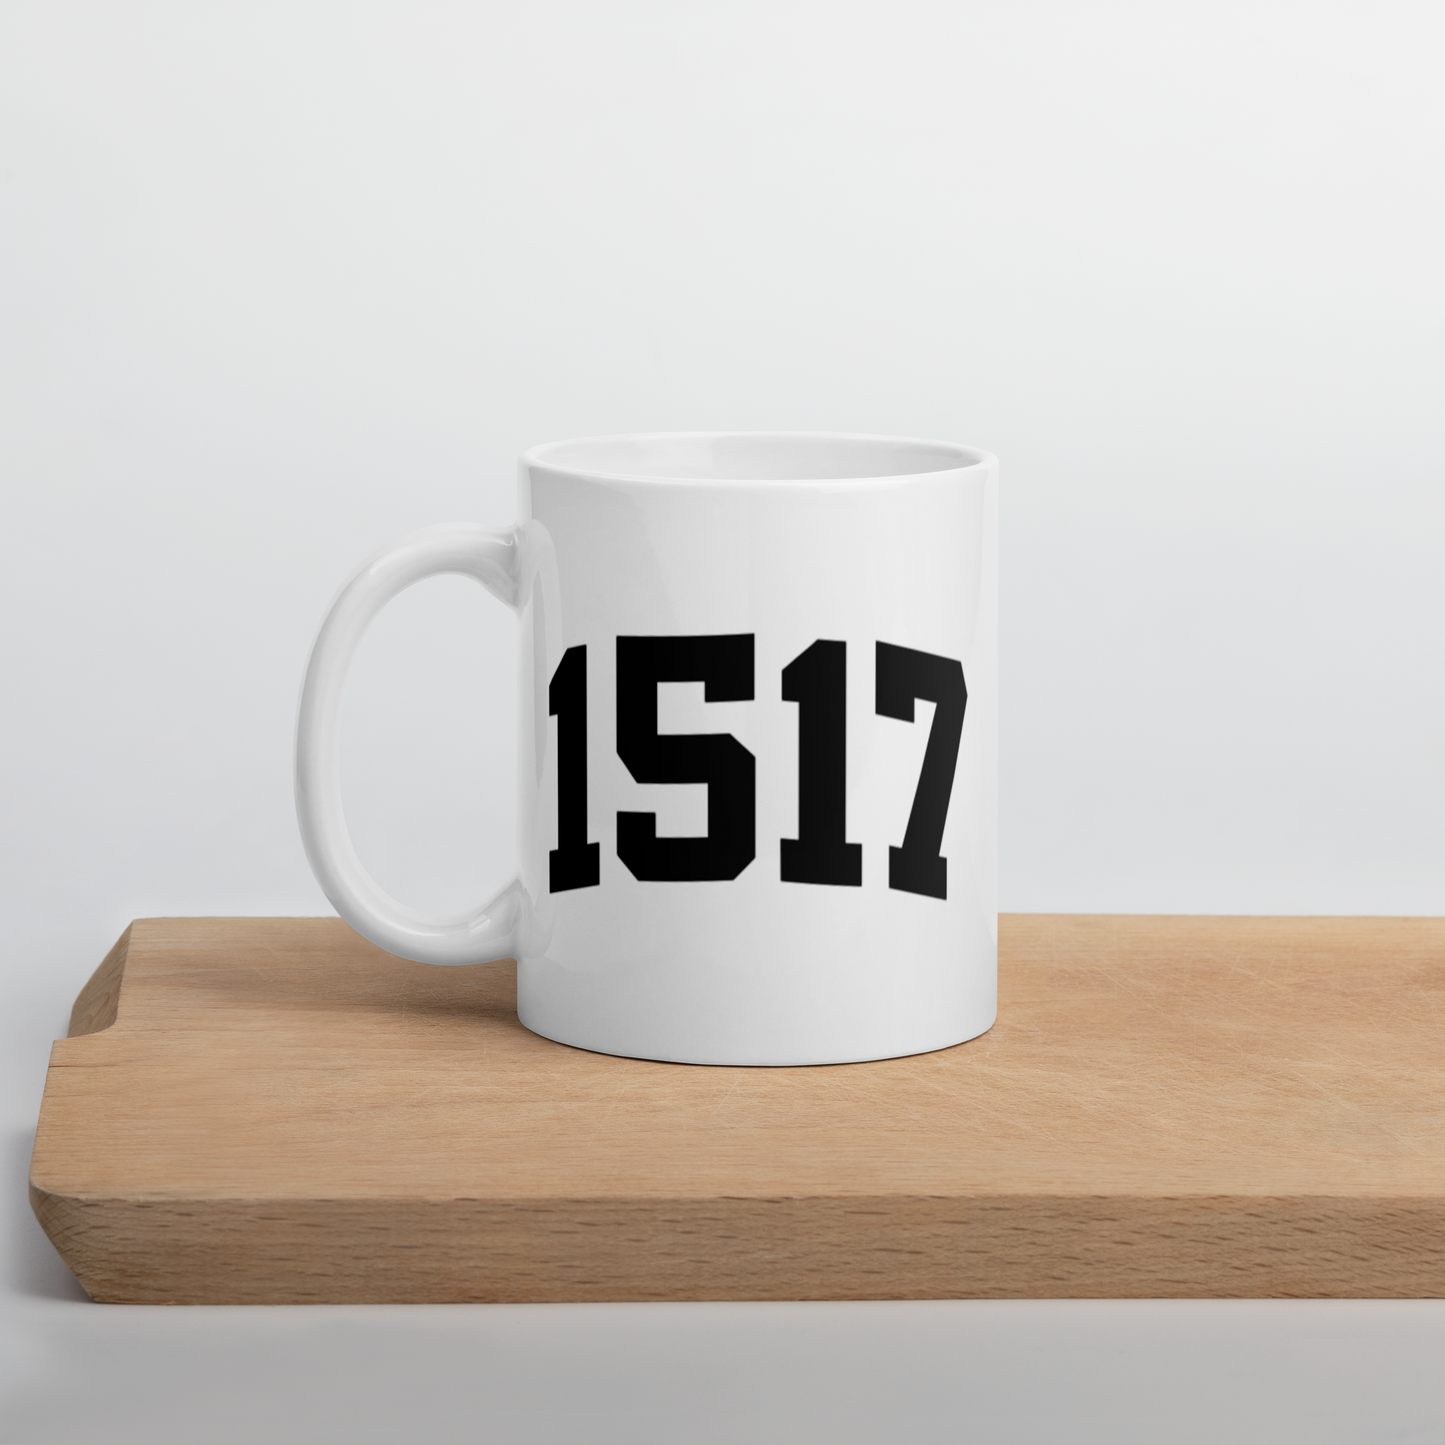 1517 Mug